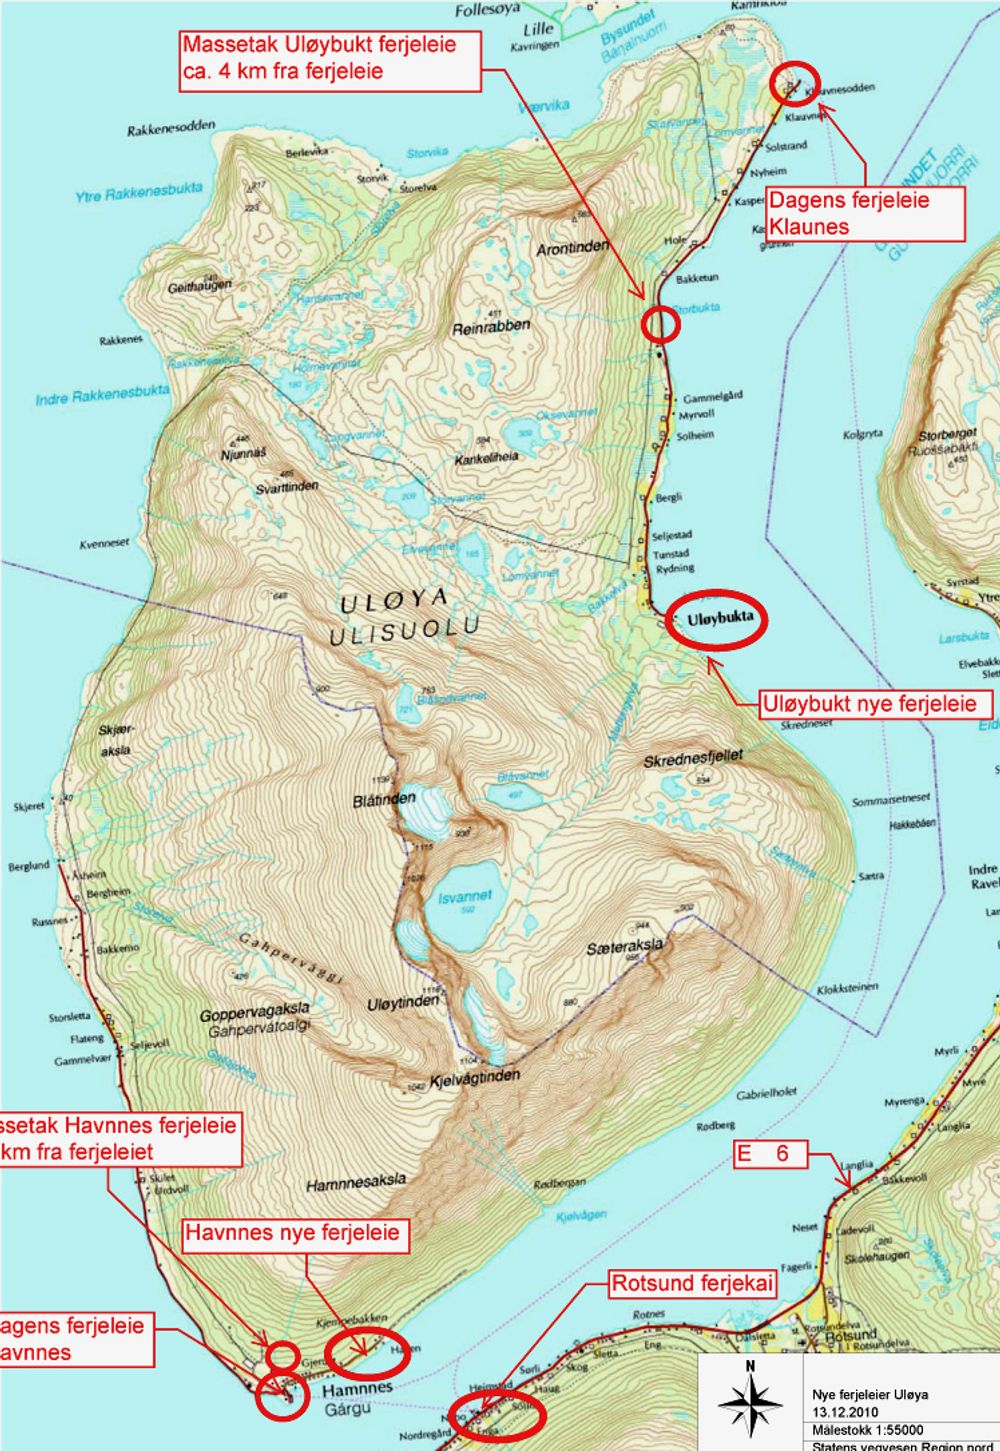 Den røde elipsen omtrent midt på bildet viser det nye fergeleiet på Uløybukt. Herfra er avstanden til Rotsund på fastlandet ikke stort mer enn halvparten av avstanden mellom Klauvnes helt nord på øya og Rotsund.
Ill.: Statens vegvesen